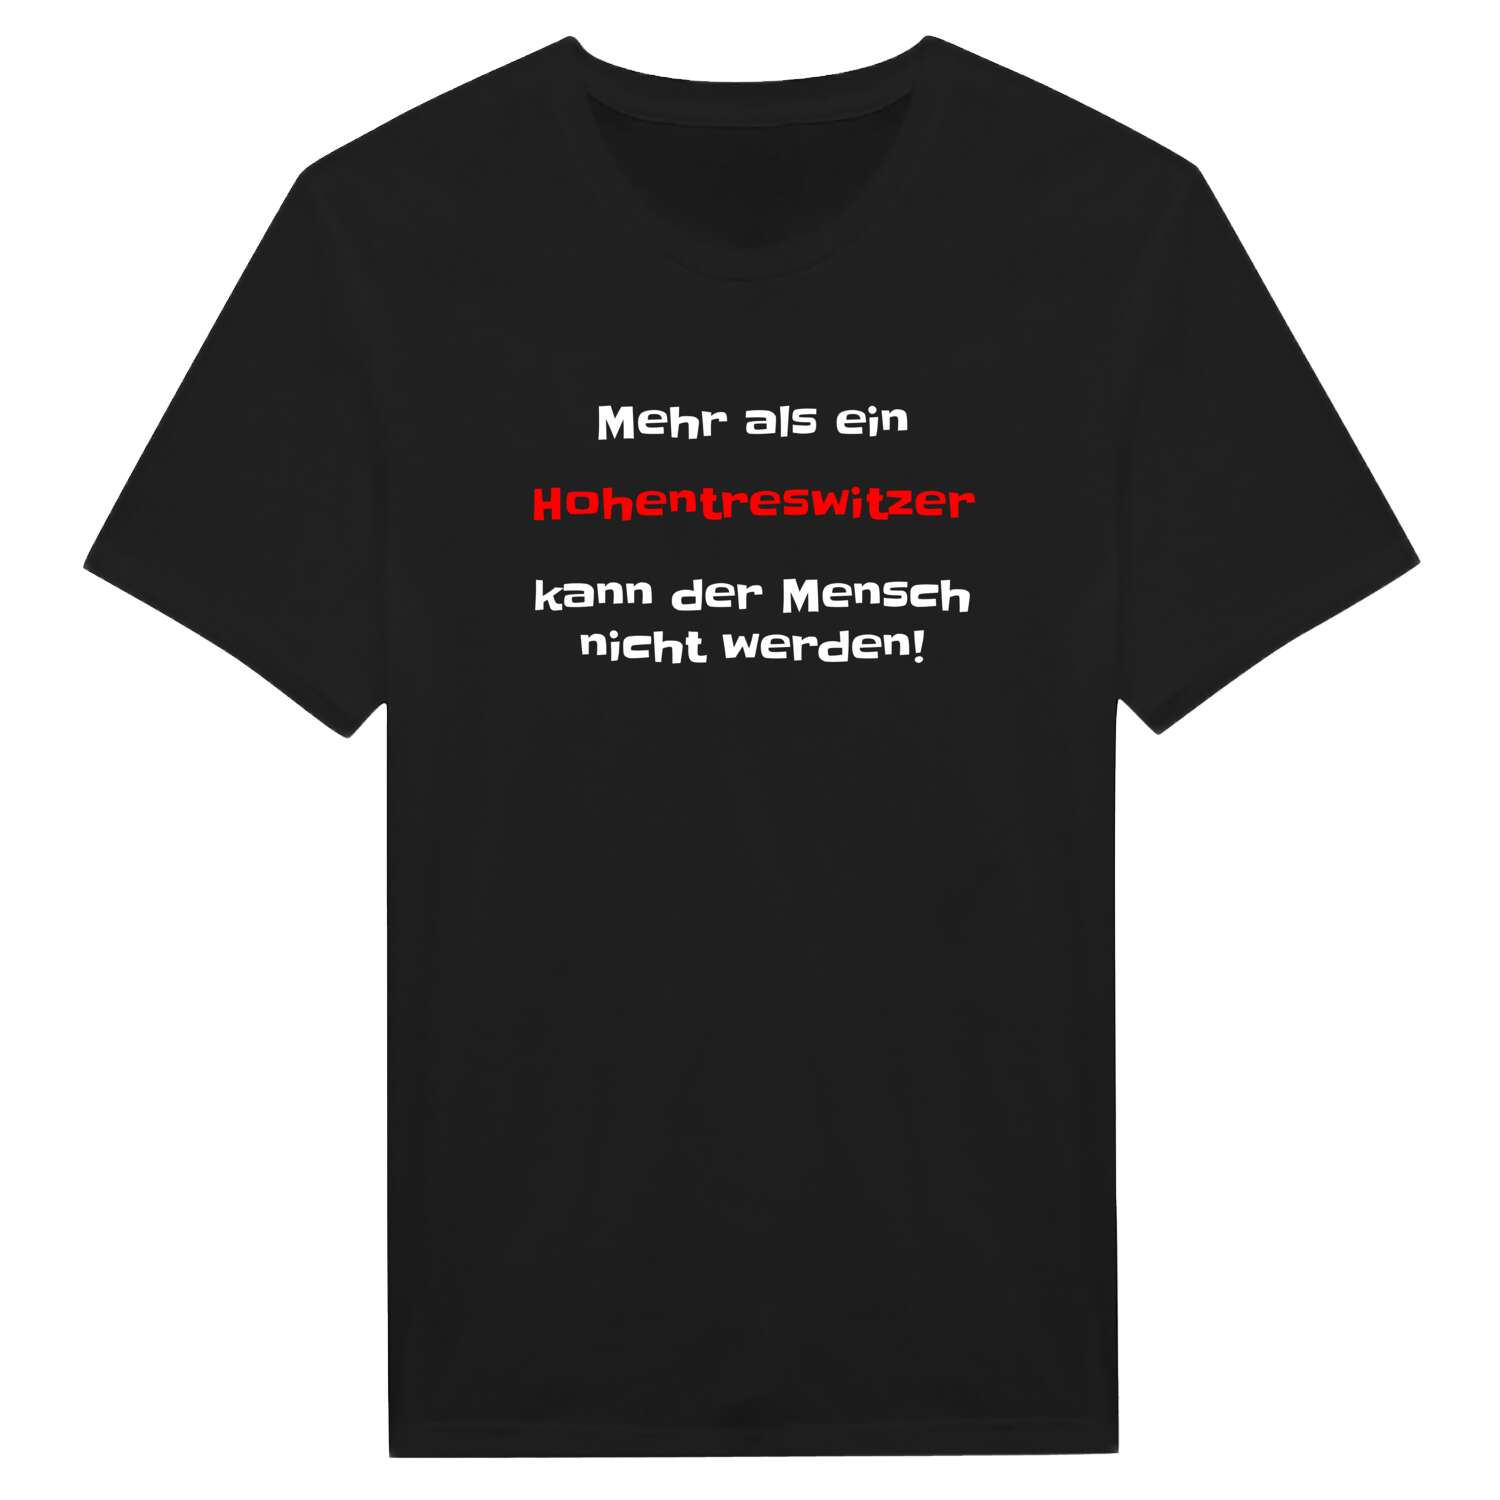 Hohentreswitz T-Shirt »Mehr als ein«